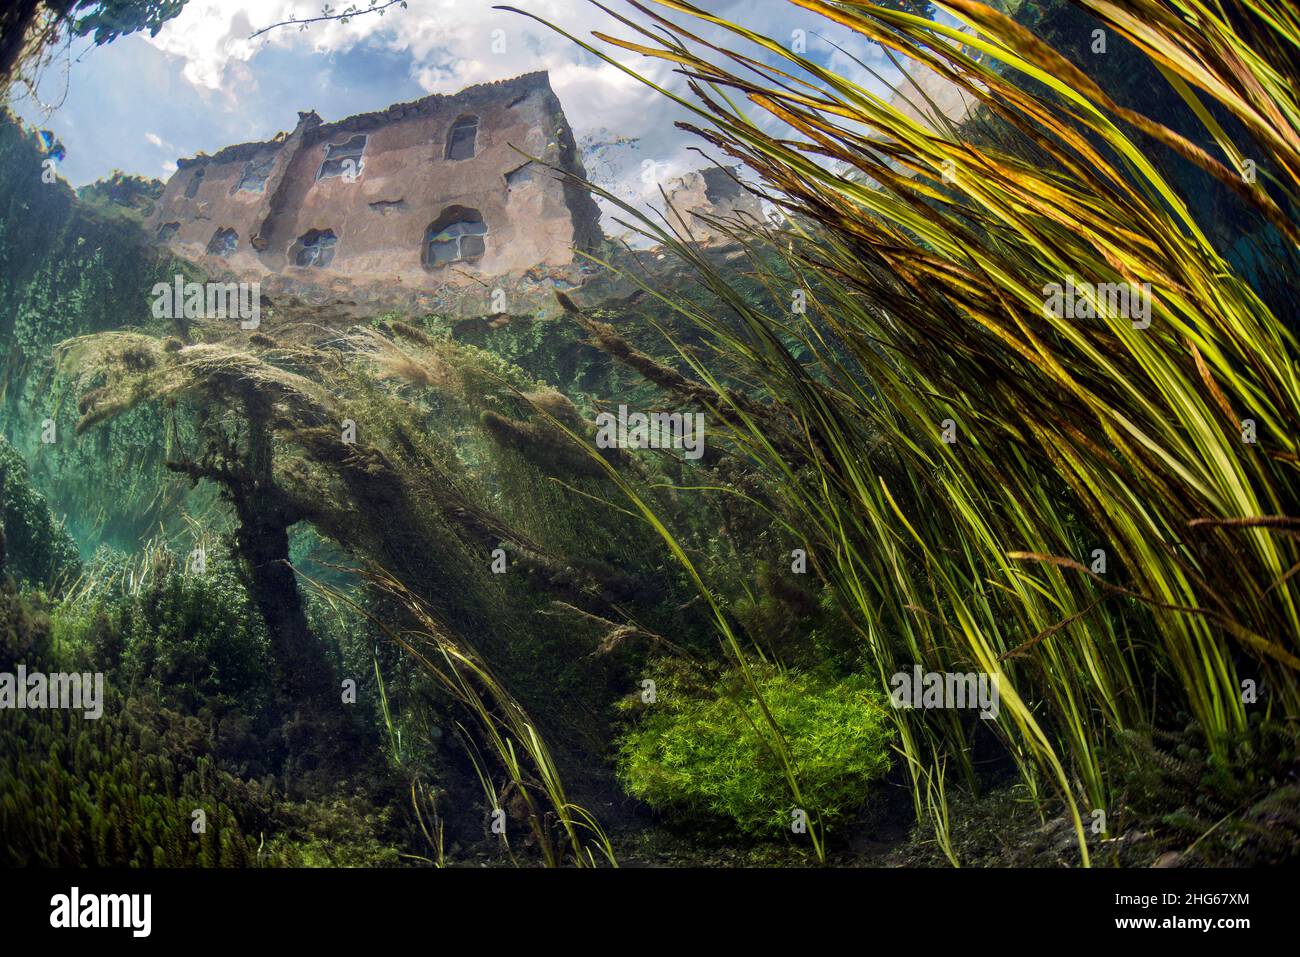 Vista subacquea dei giardini di Ninfa, un monumento naturale creato dalla famiglia Caetani. Questo scatto fa parte di un lavoro commissionato dal Roffredo CA Foto Stock